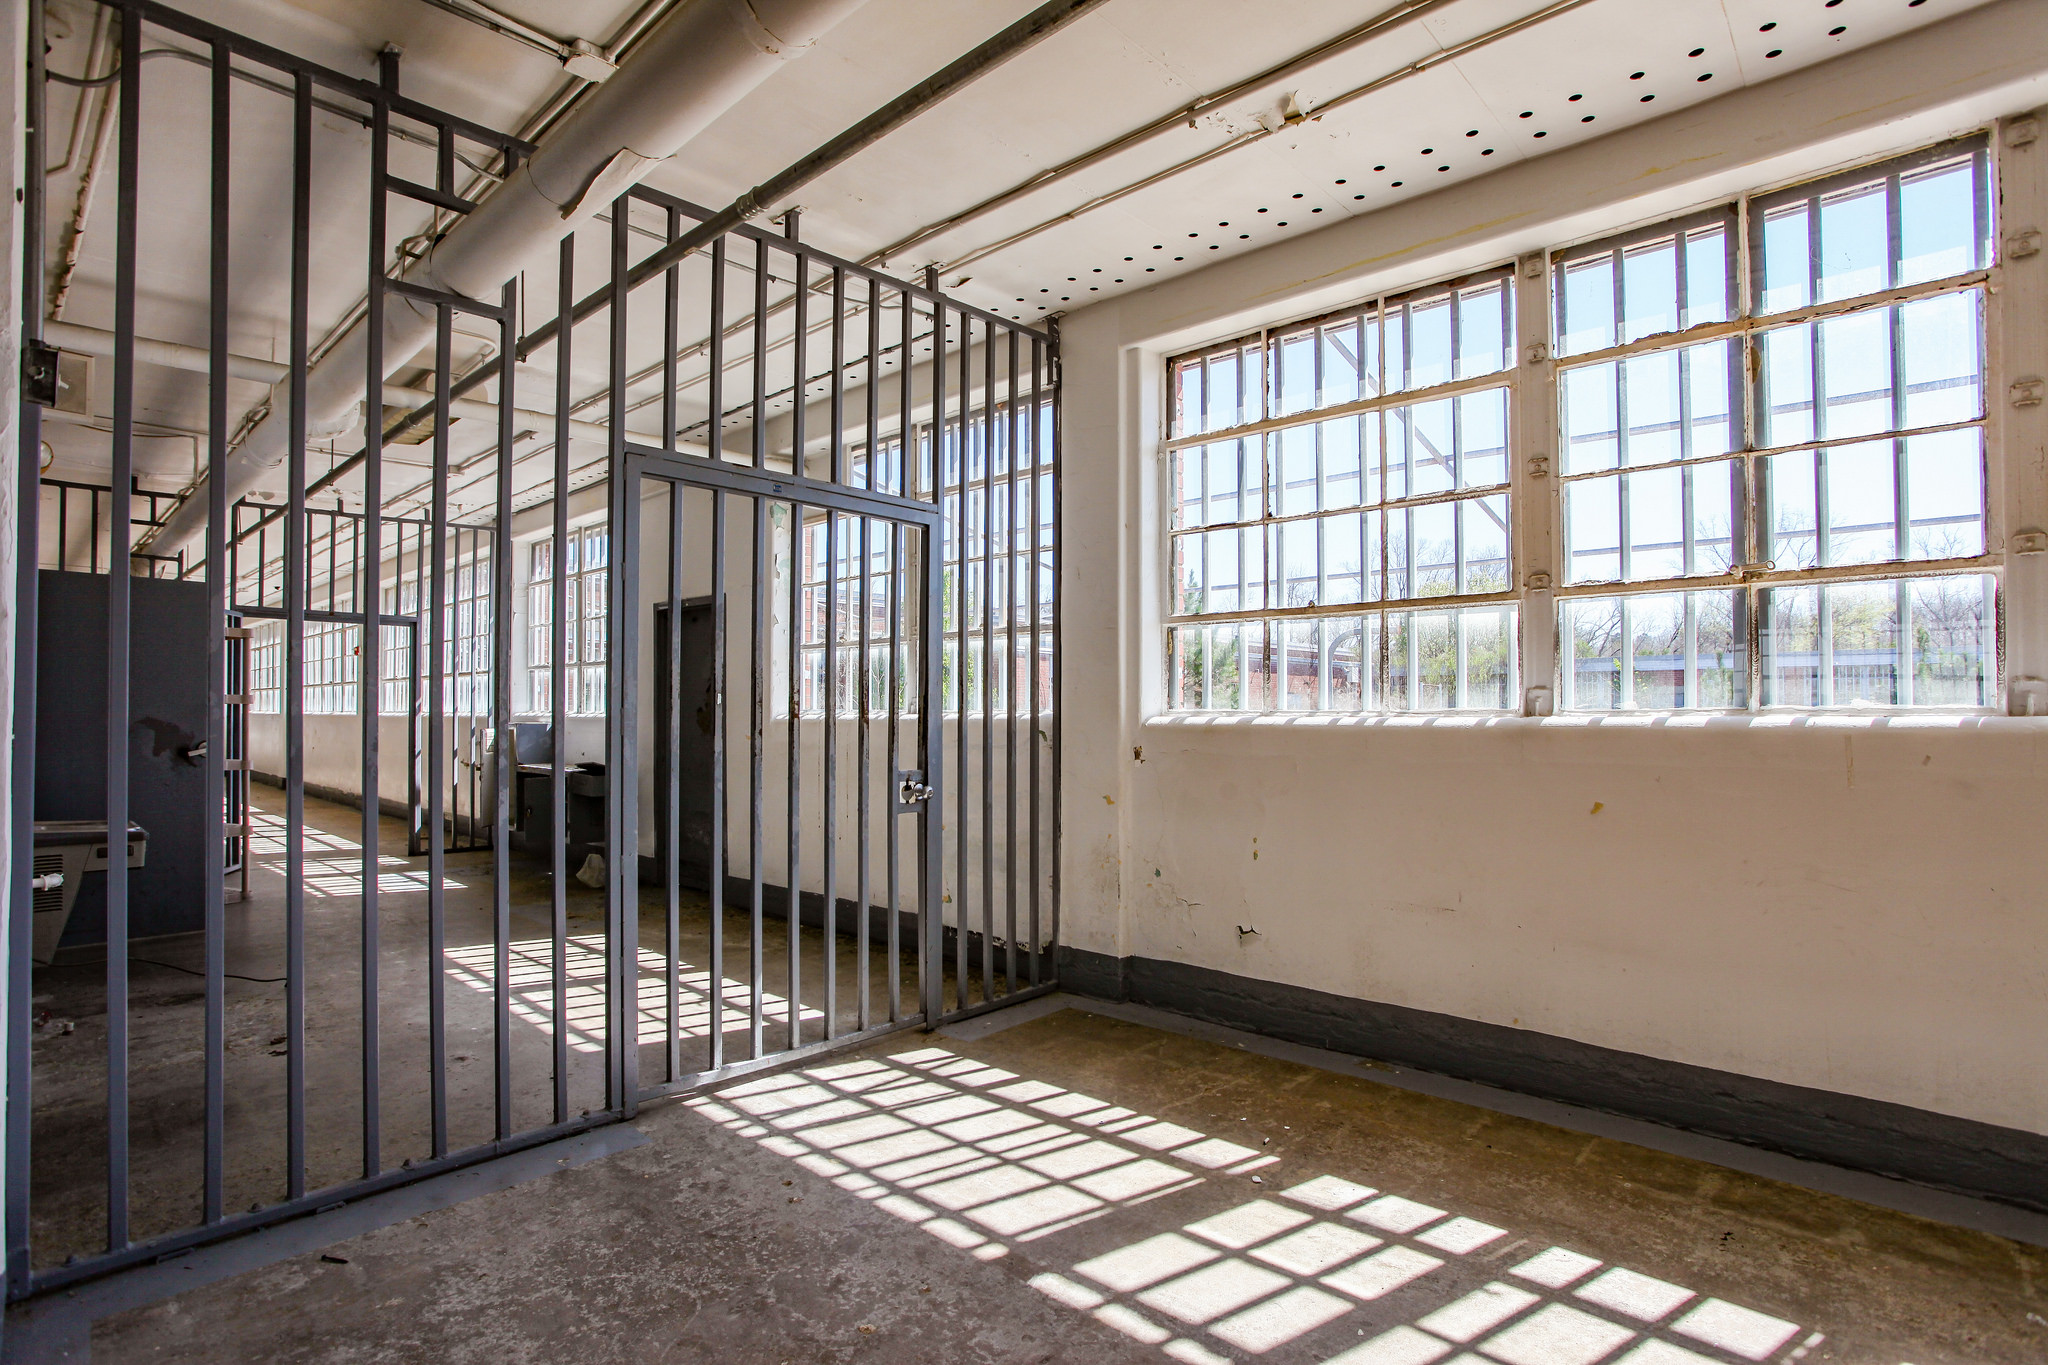 State Prison